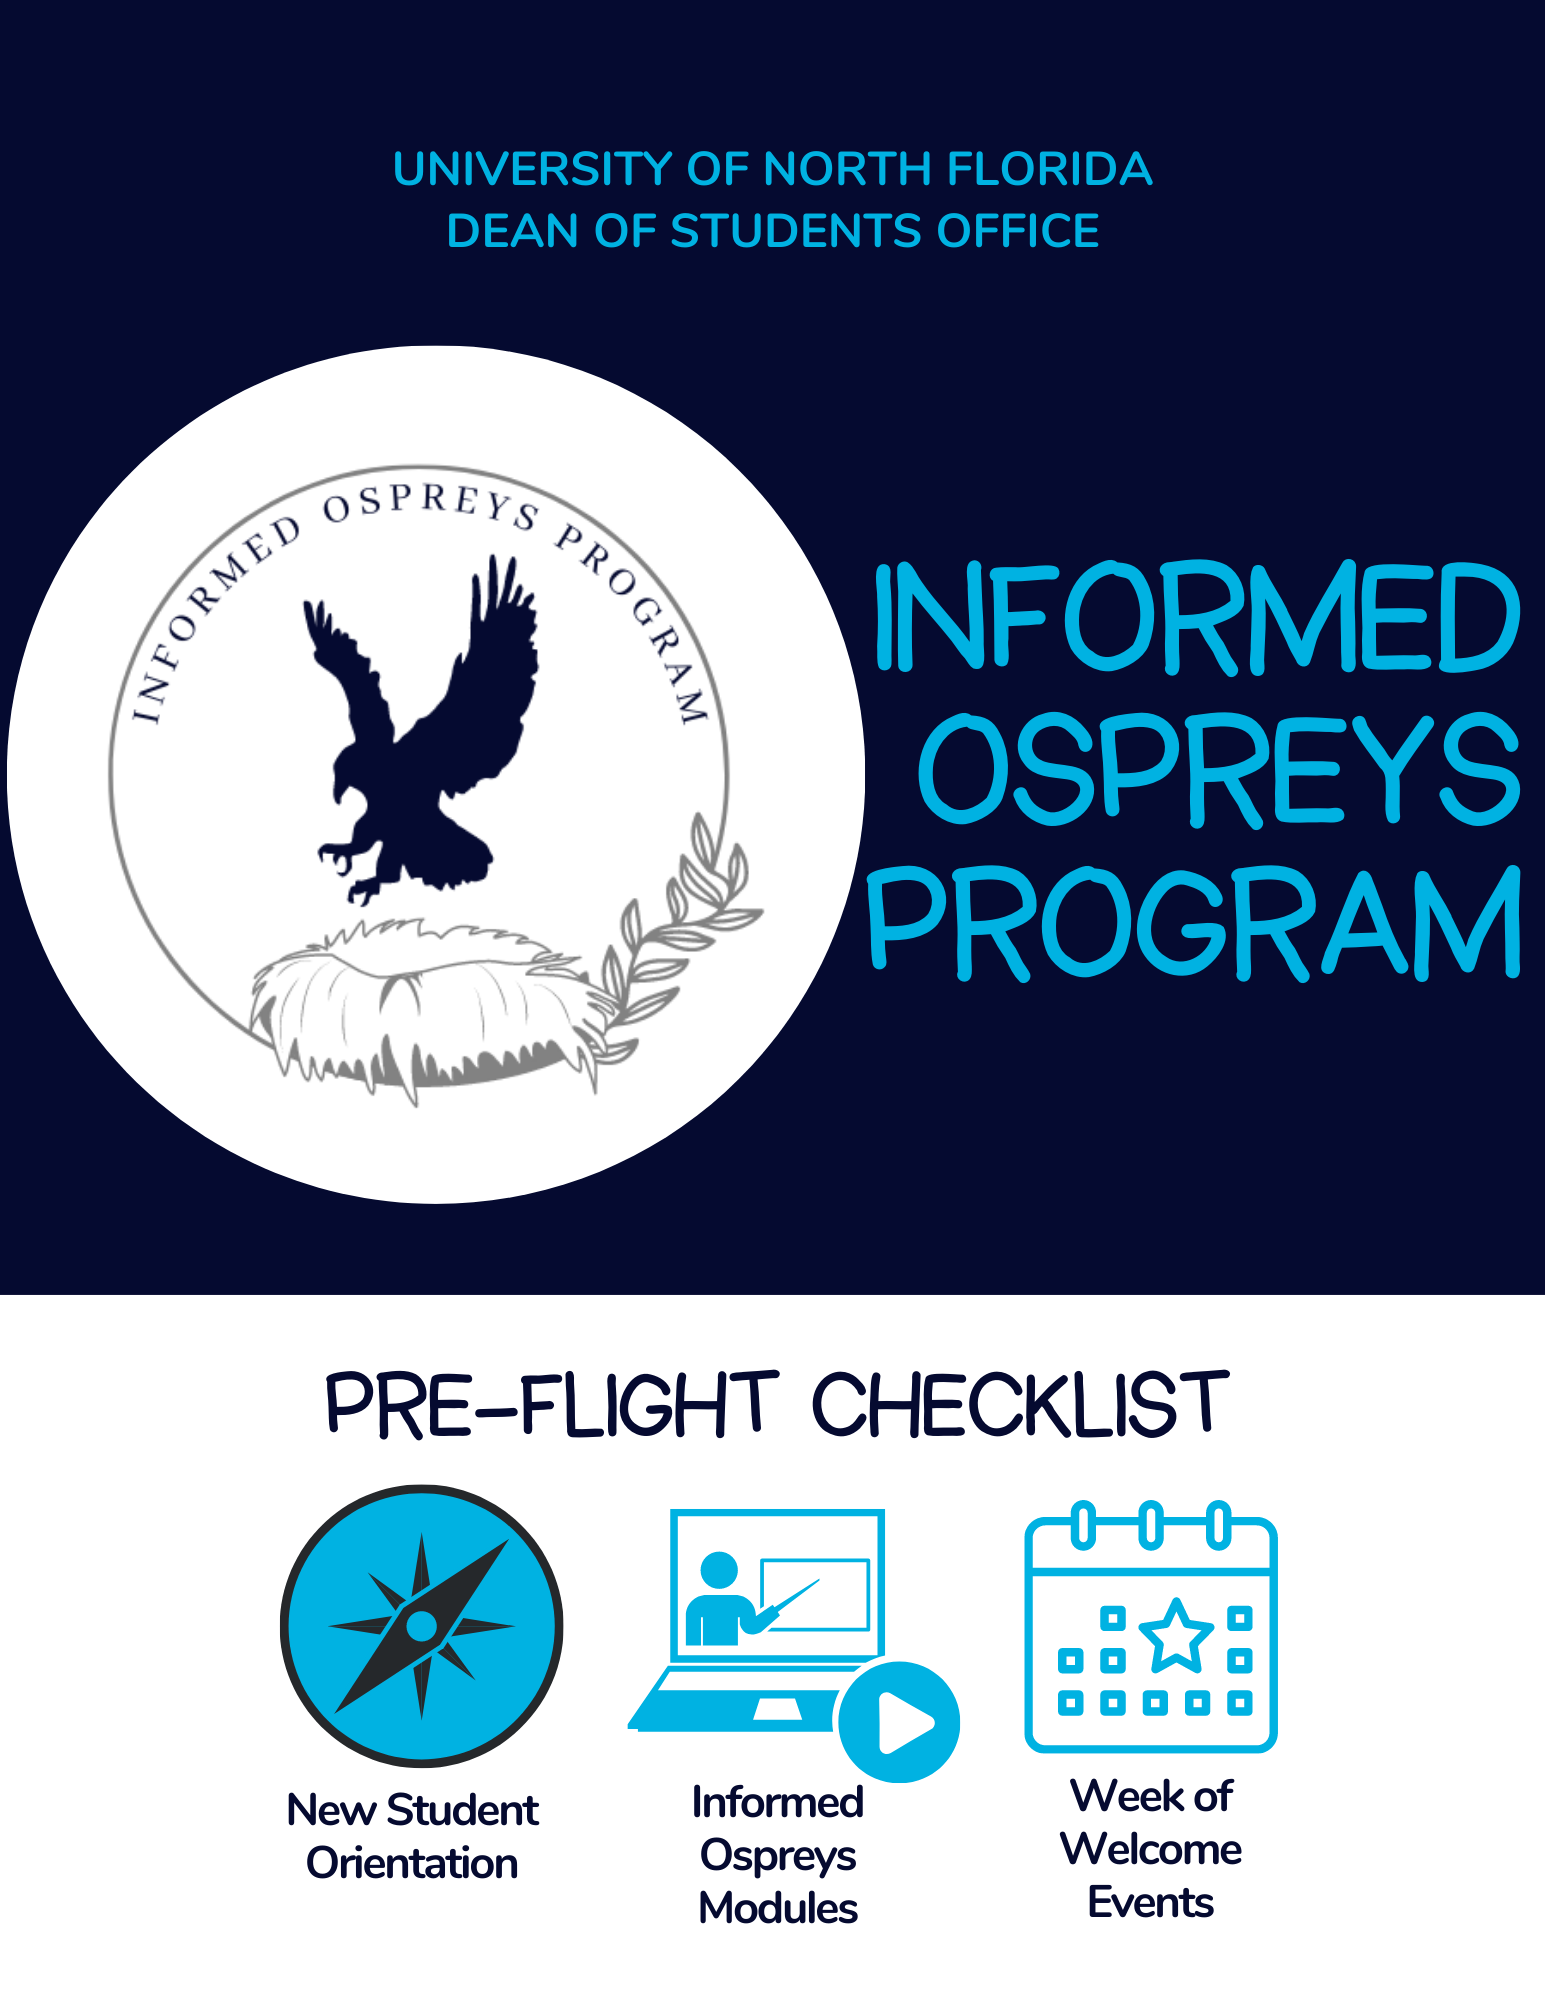 informed osprey program pre-flight checklist